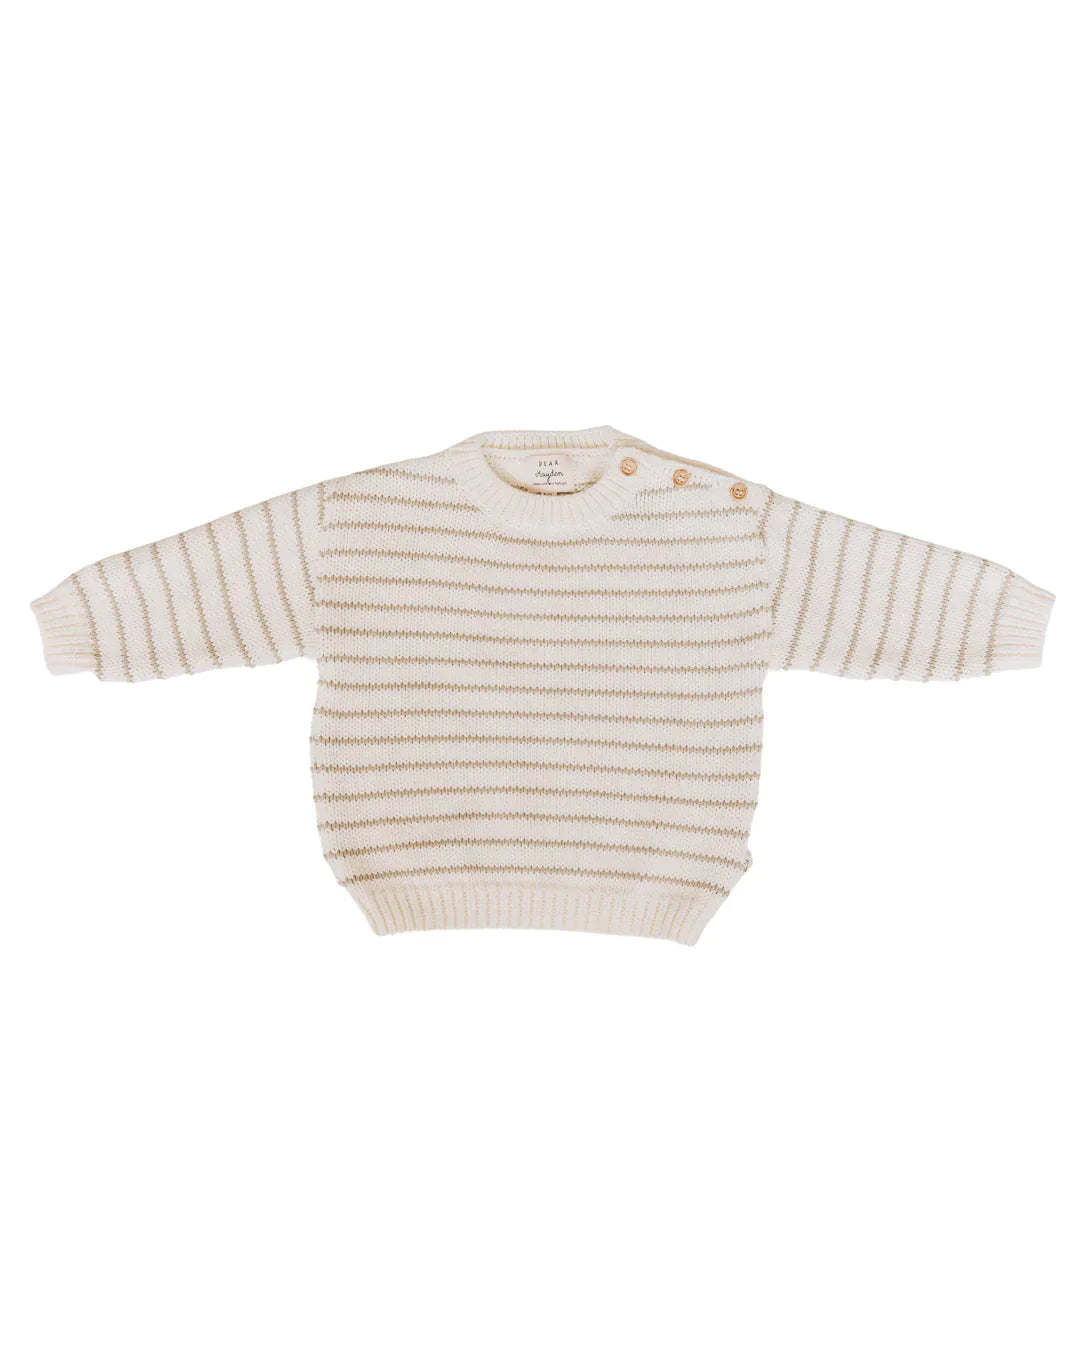 Organic Cotton Stripe Sweater - Premium Kids Denim from Dear Hayden - Just $64! Shop now at shopthedenimbar